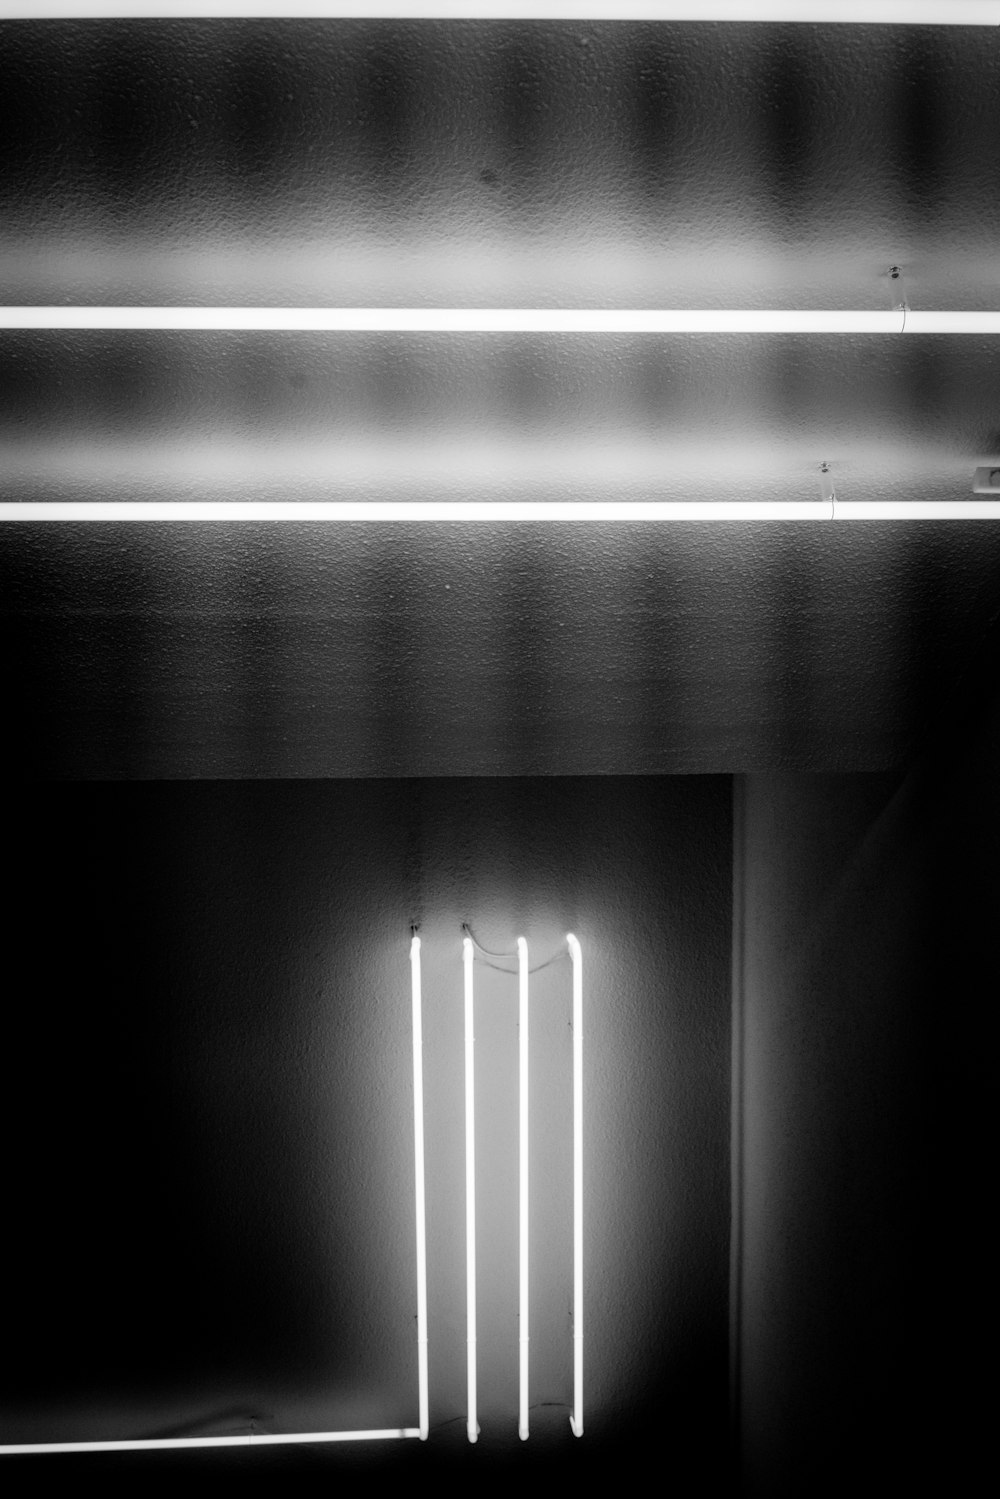 Photographie en niveaux de gris de lampes fluorescentes allumées à l’intérieur d’une pièce